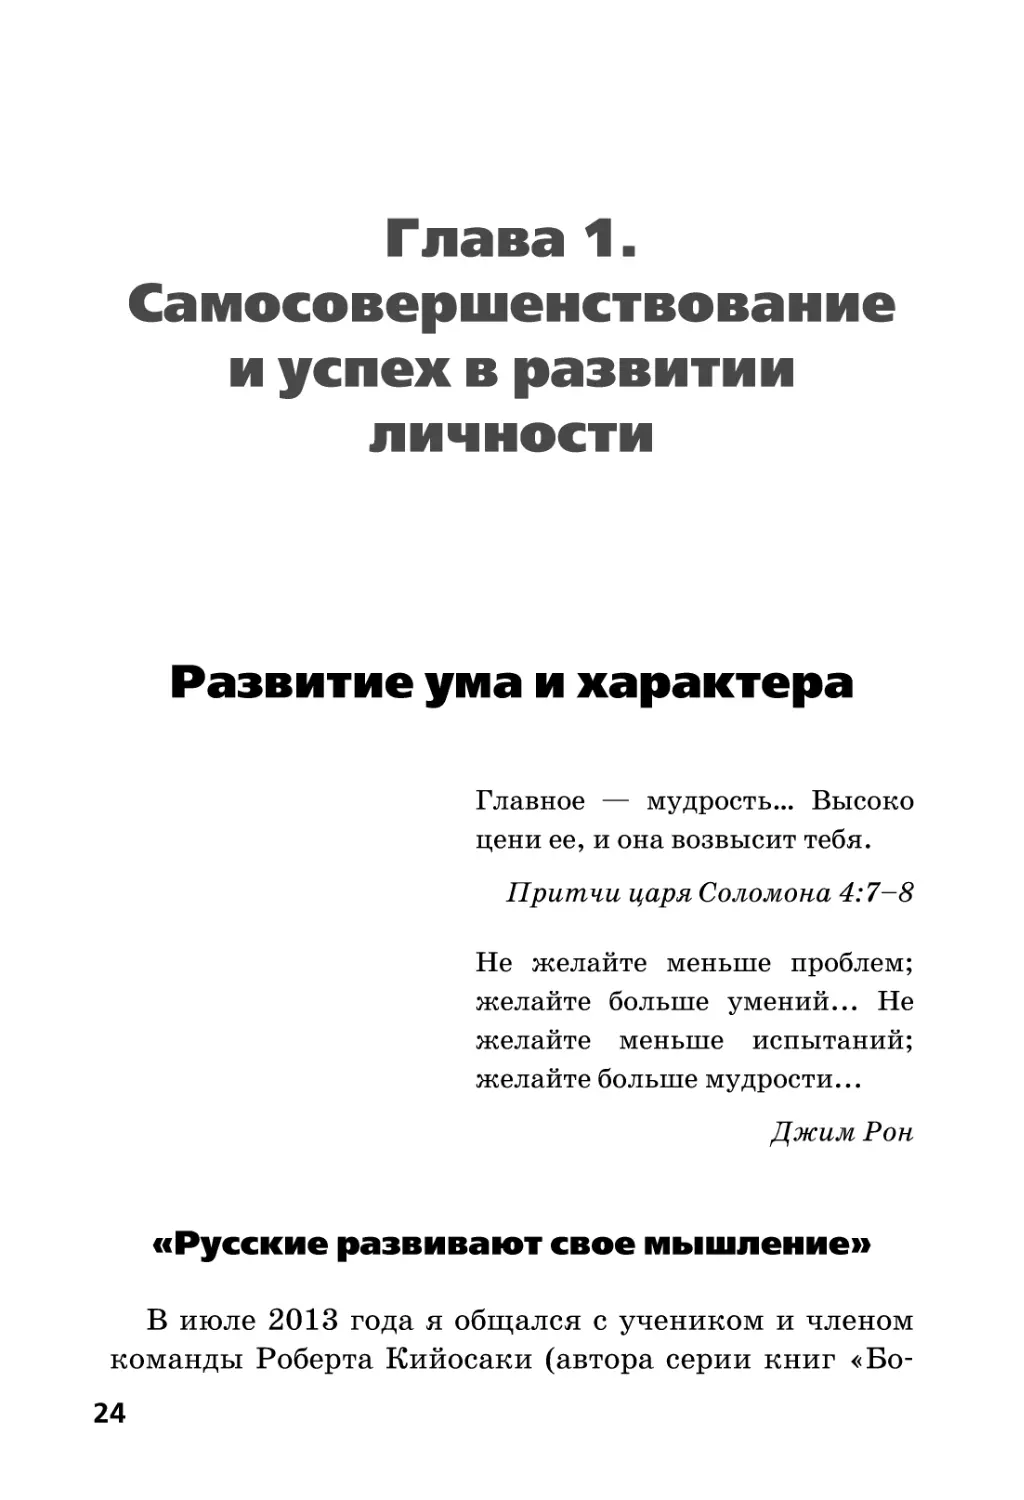 Глава 1. Самосовершенствование и успех в развитии личности
Развитие ума и характера
«Русские развивают свое мышление»